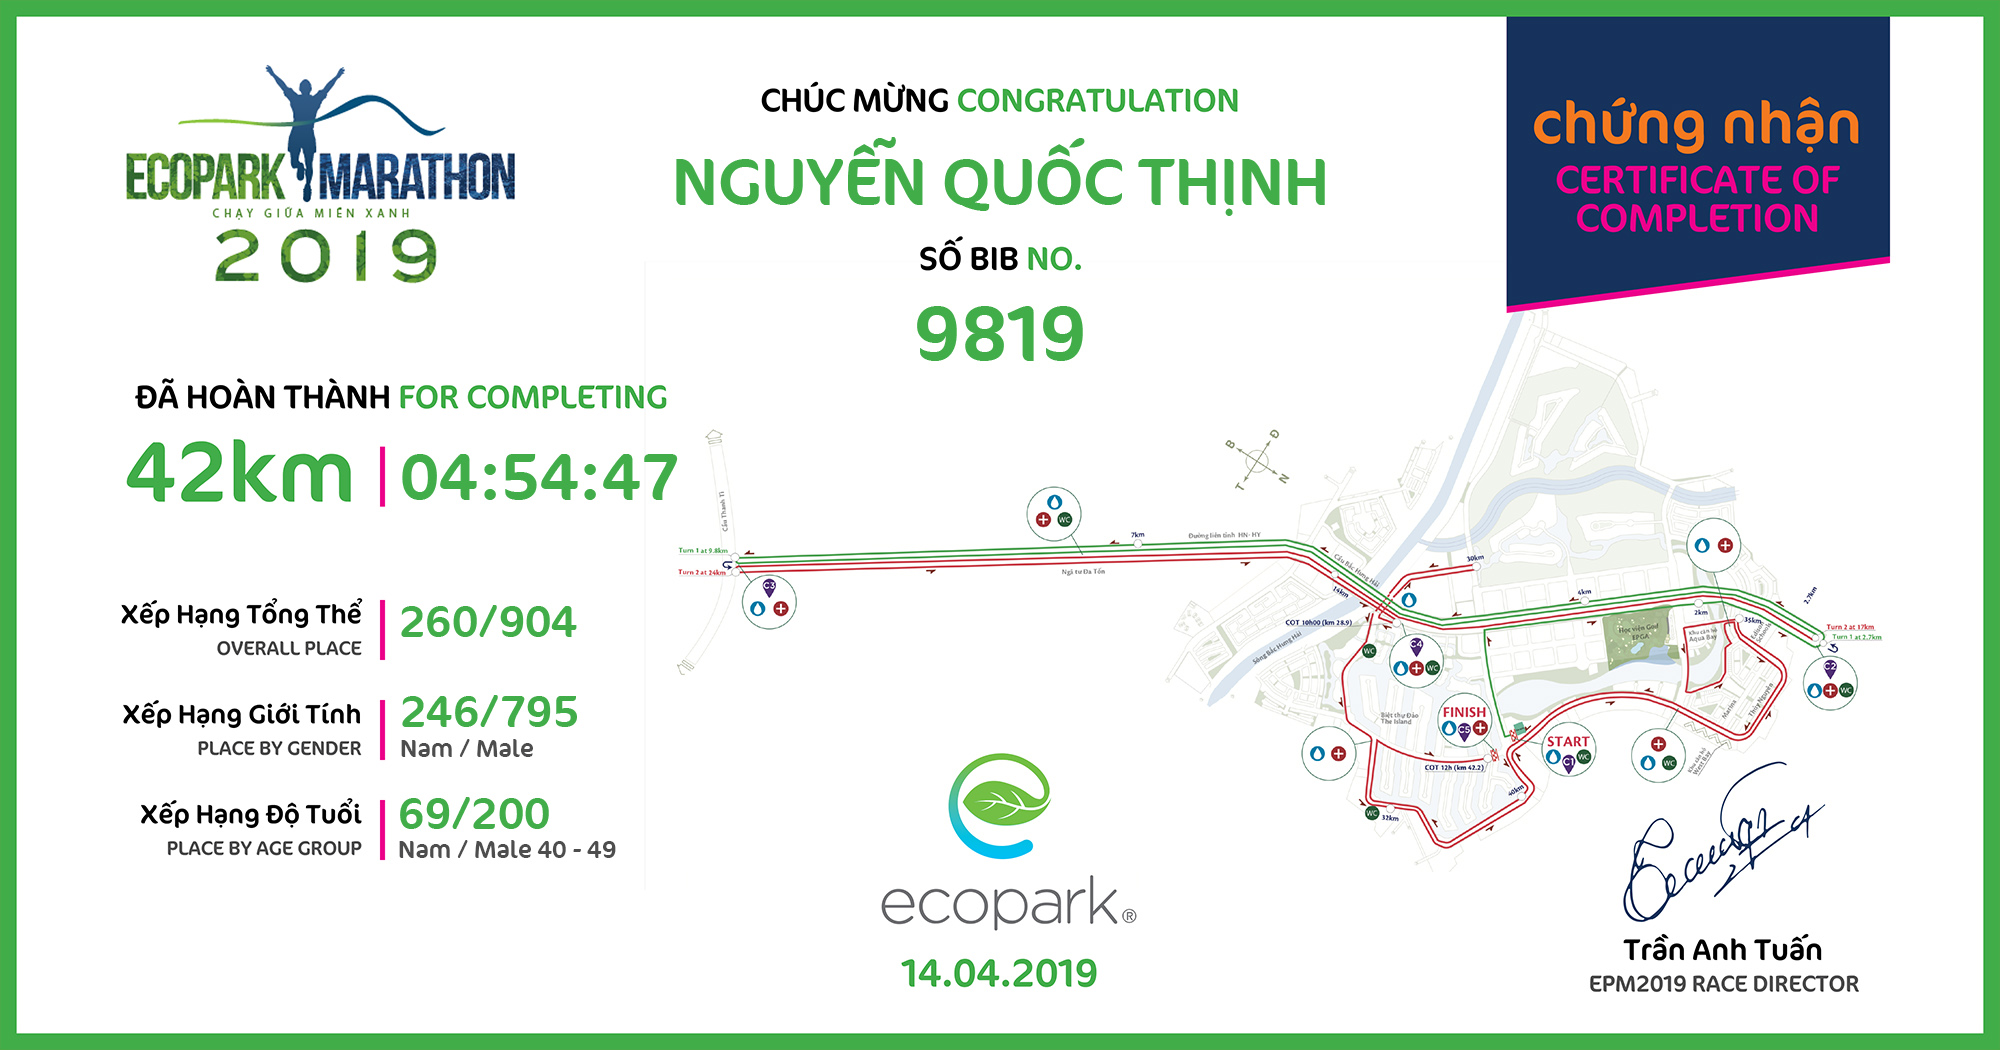 9819 - Nguyễn Quốc Thịnh